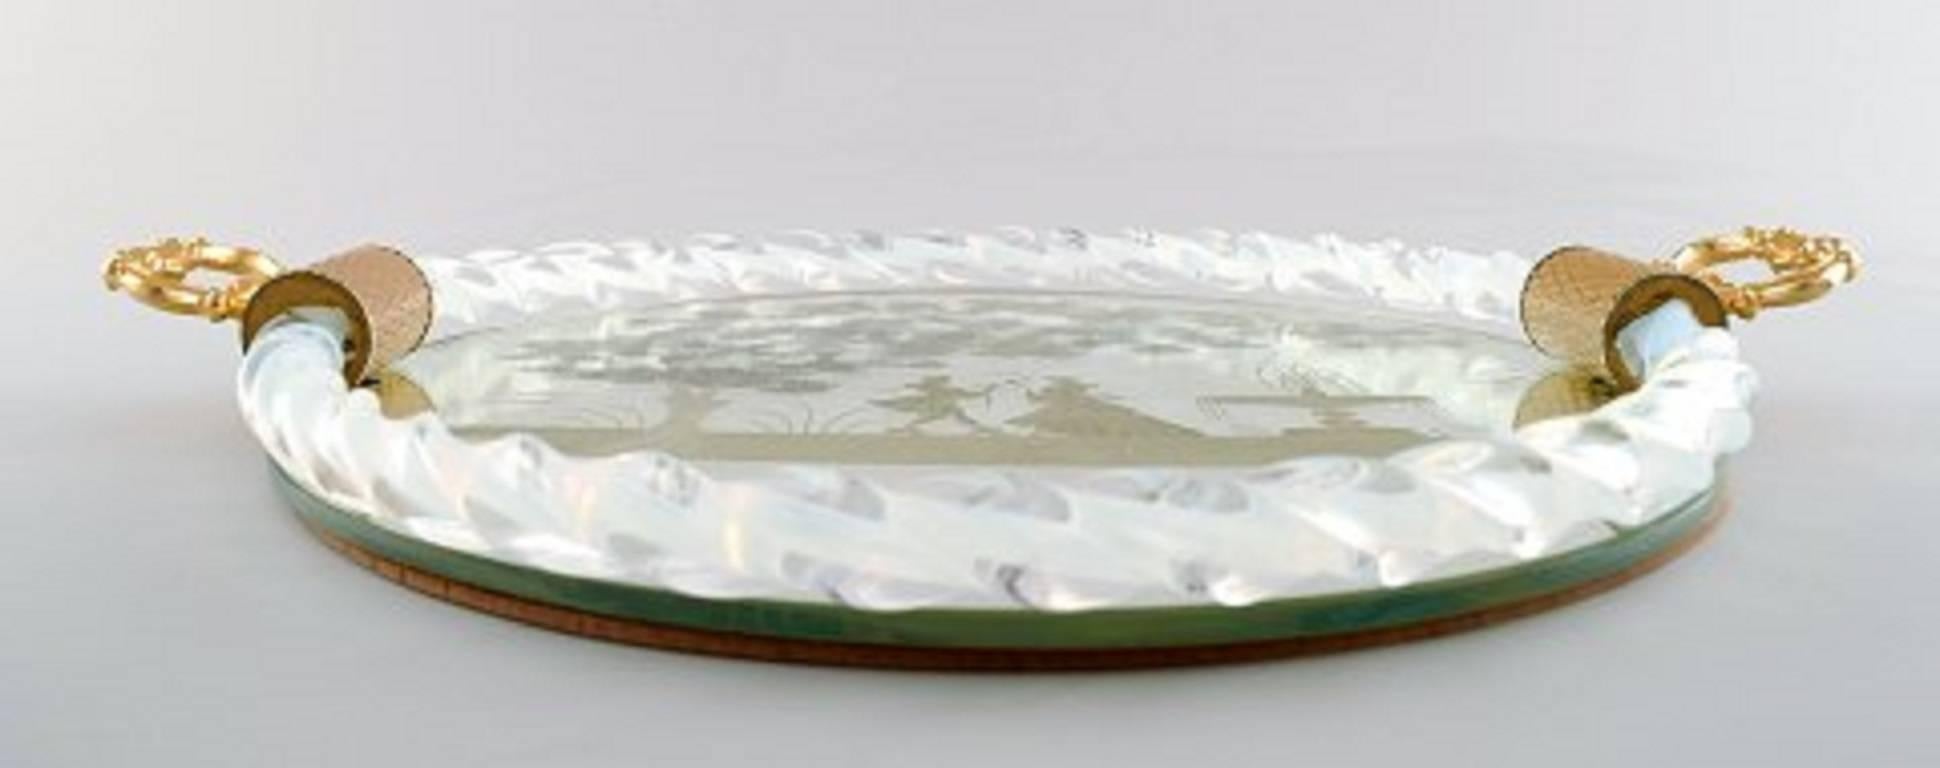 Murano, Italie, plateau rectangulaire avec plaque en miroir, motif floral avec scène galante, deux poignées en métal doré sur le côté.
Longueur environ 34 cm (avec la poignée), profondeur 2,5 cm.
En parfait état.